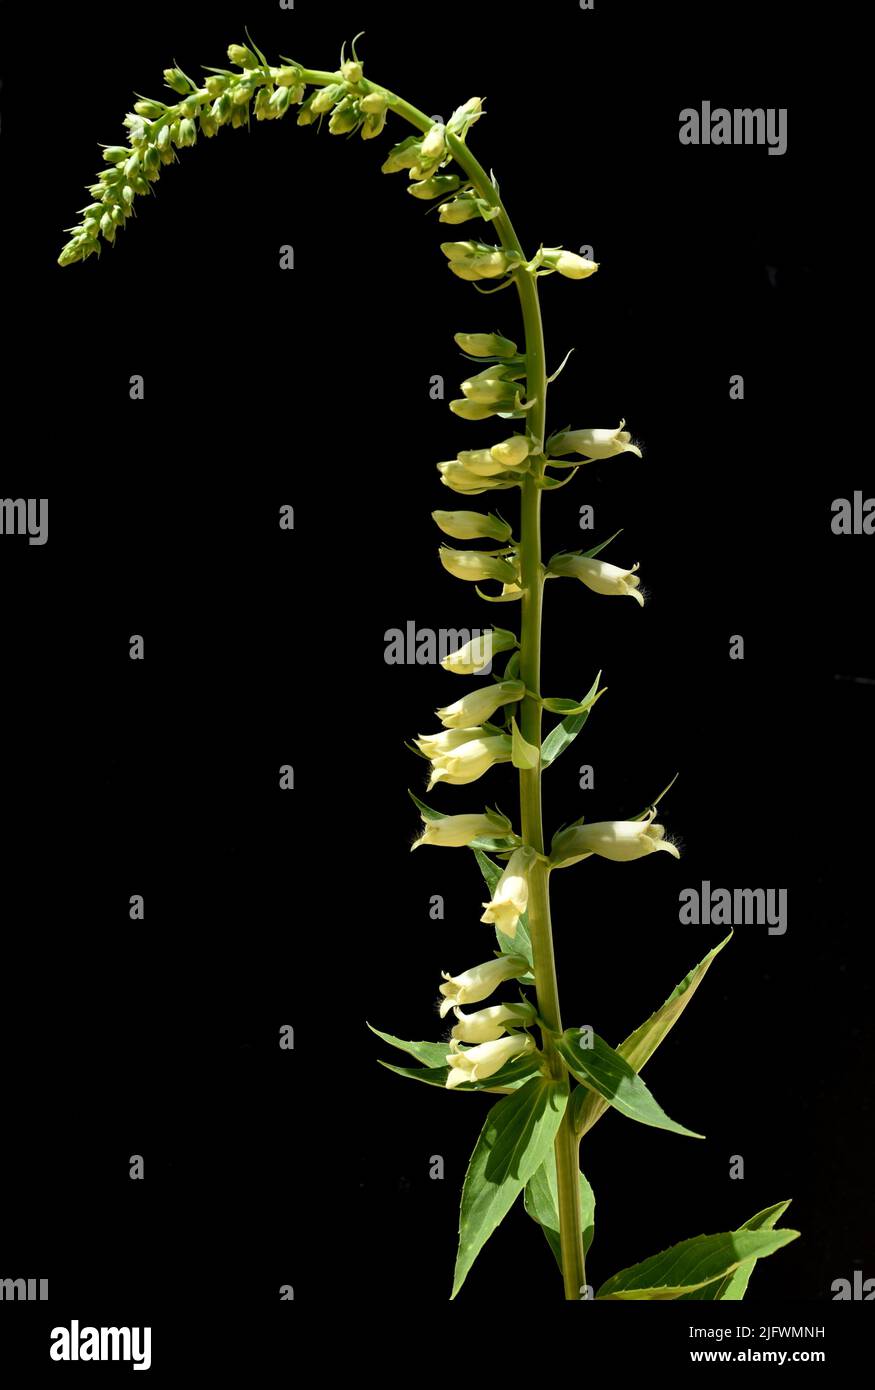 Gelber Fingerhut, Digitalis lutea, ist eine wichtige Heilpflanze und eine Giftpflanze mit gelben Blueten. Sie waechst vor allem im Wald und wird in de Stock Photo